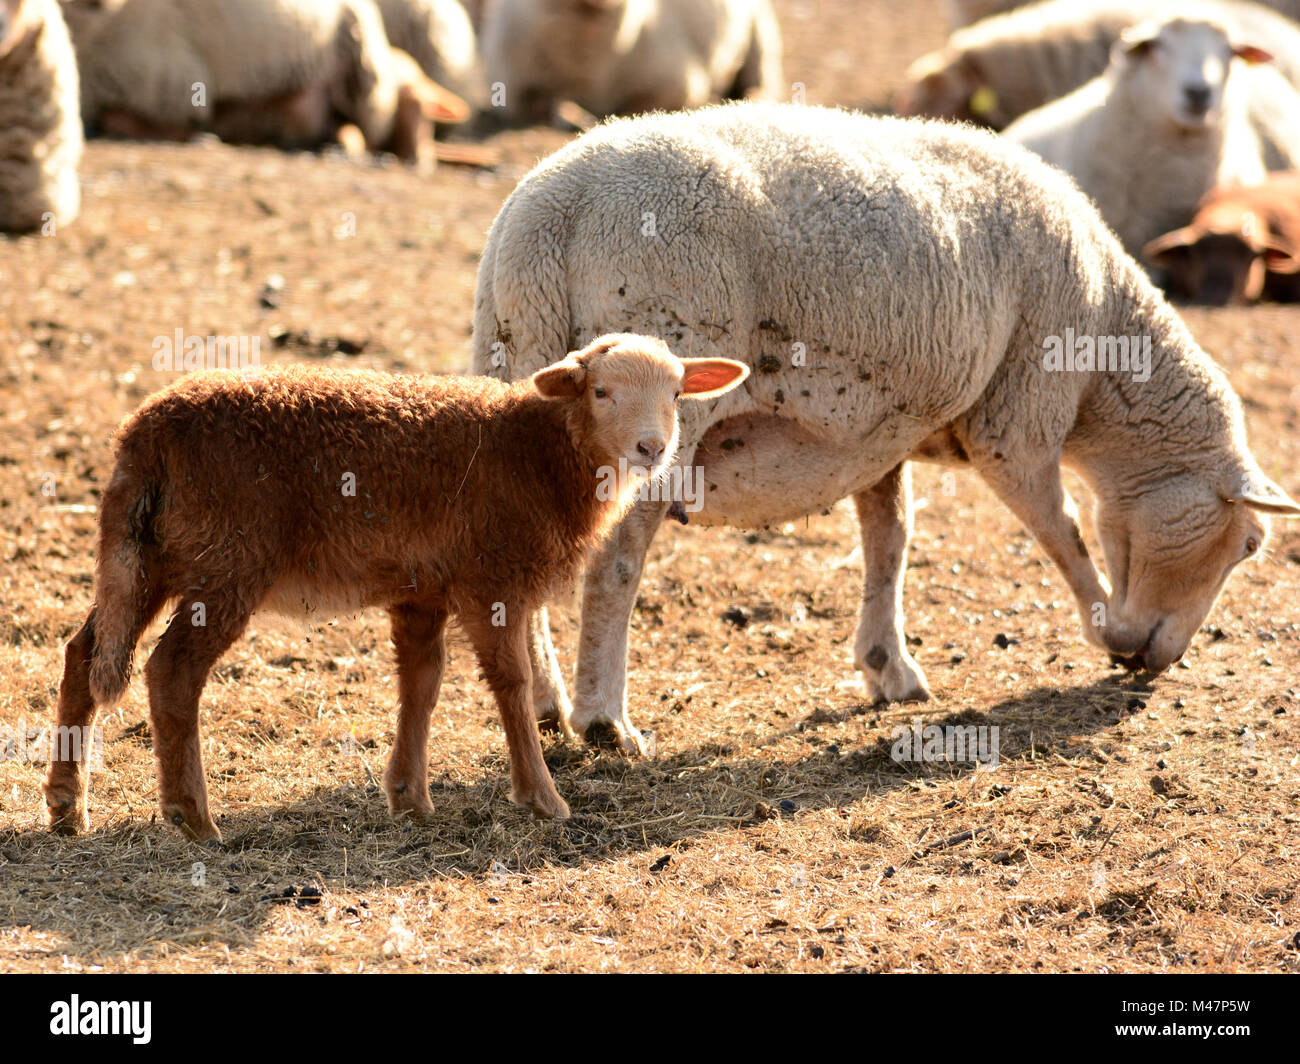 sheep baby Stock Photo